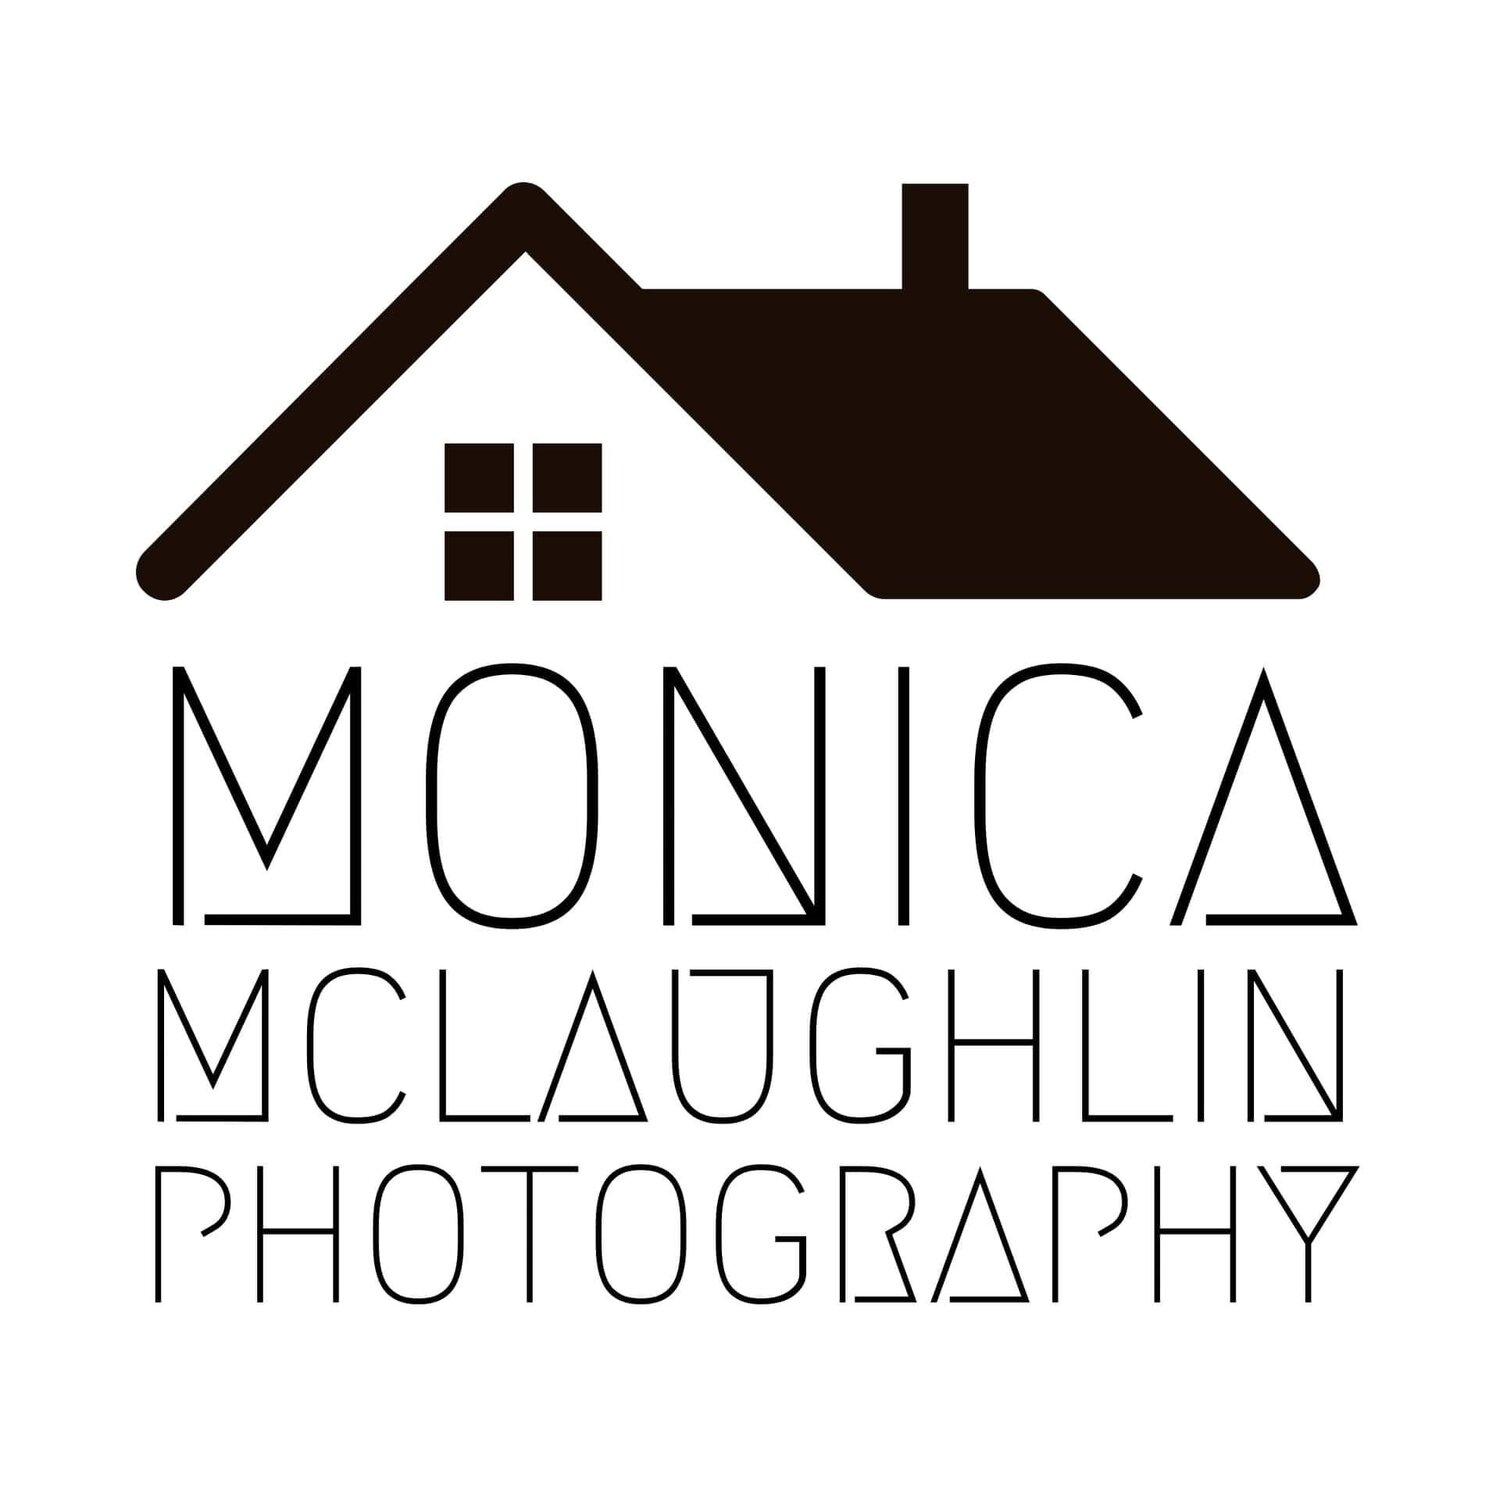 Monica McLaughlin Photography